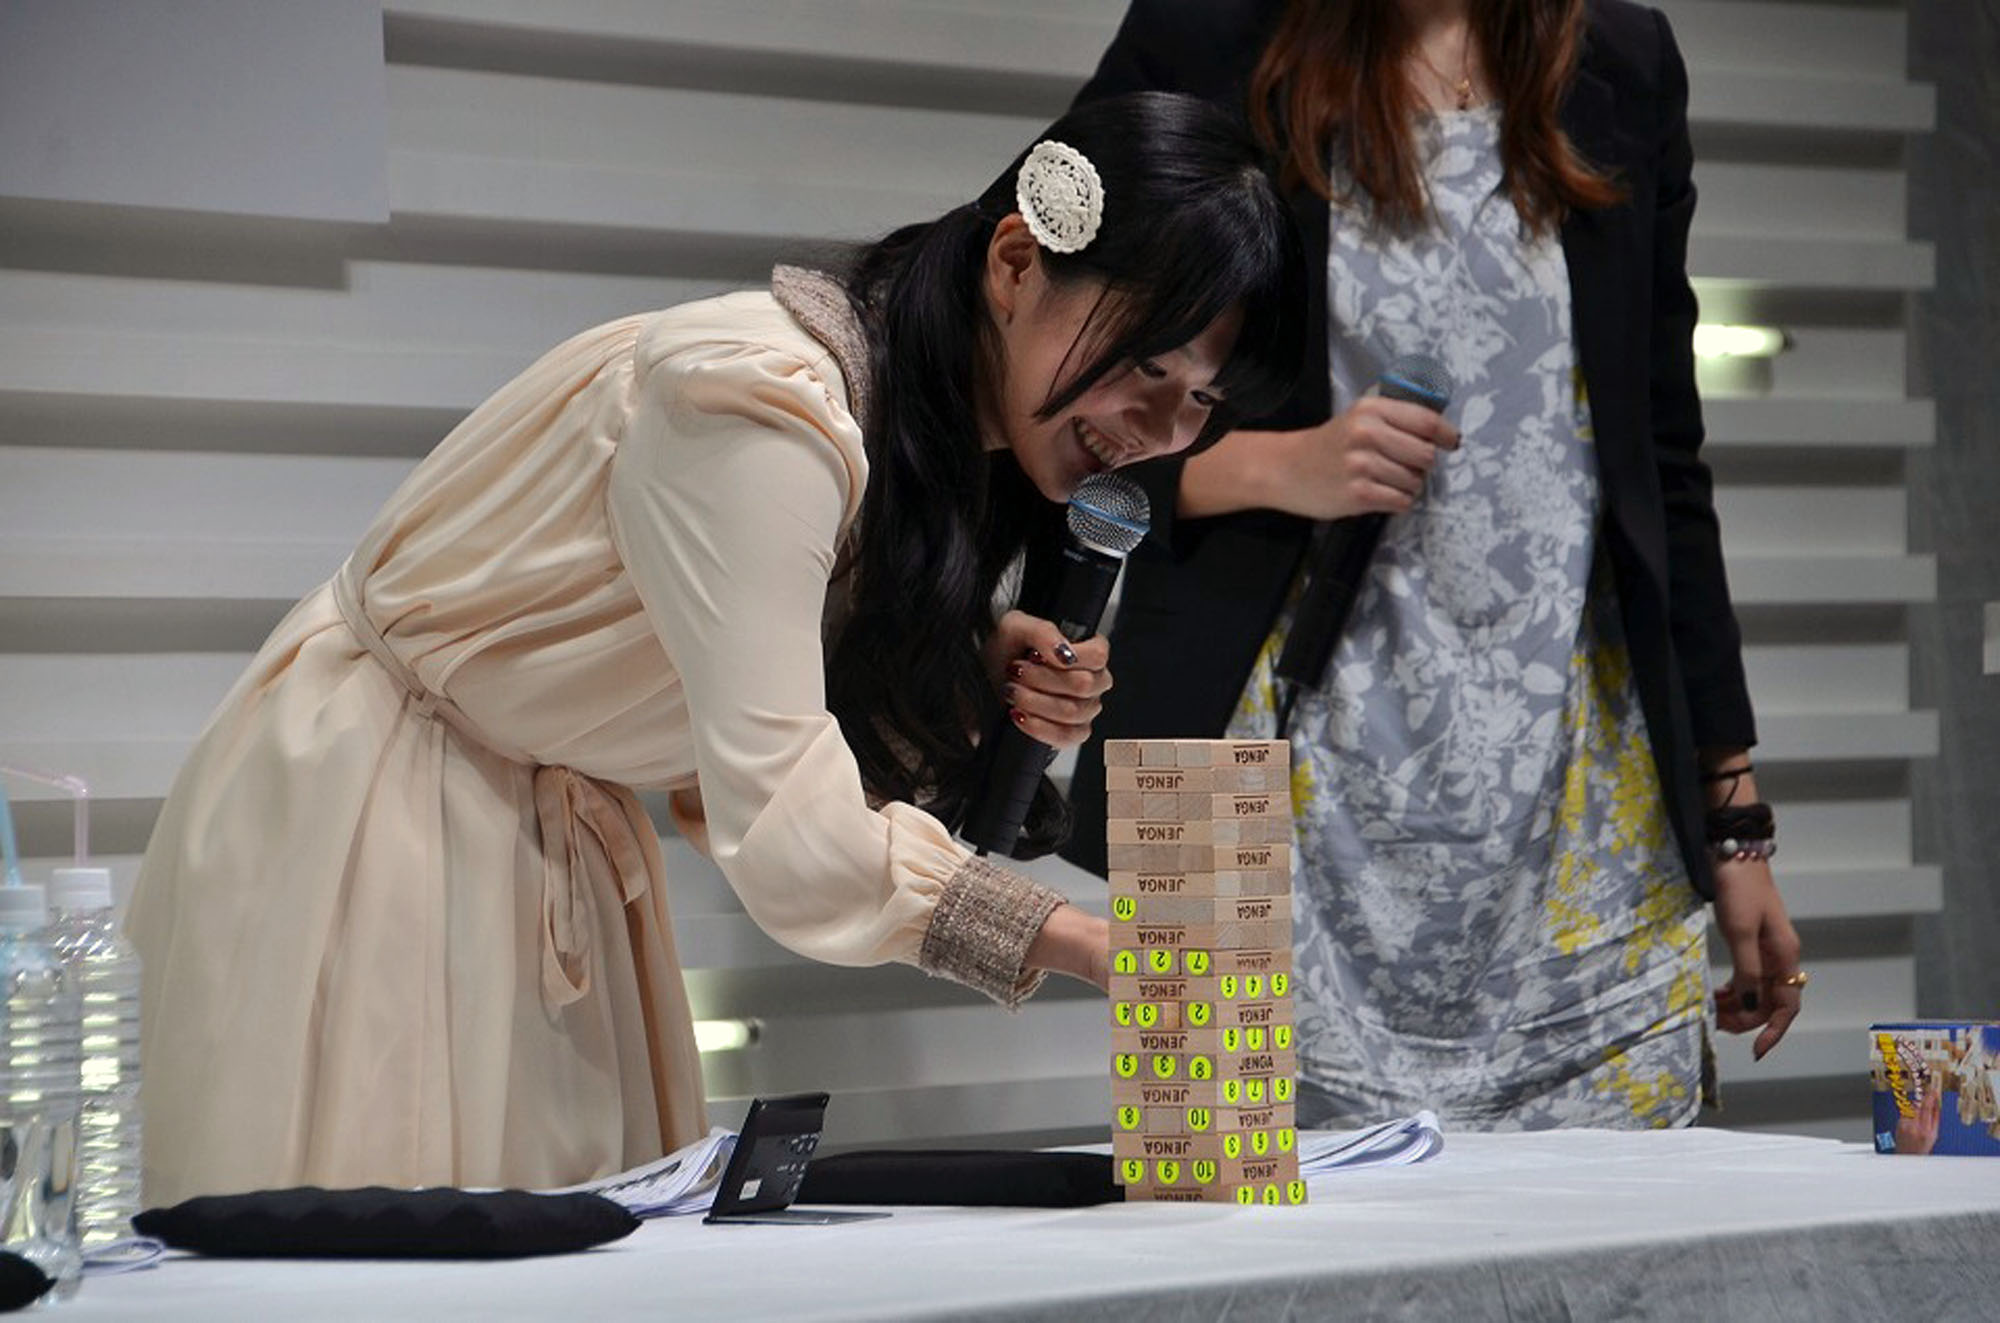 三澤紗千春さんによる実機プレイ映像が公開！東京ゲームショウ2015で行われた「ザクセスヘブン リベリオン」ステージを紹介の画像